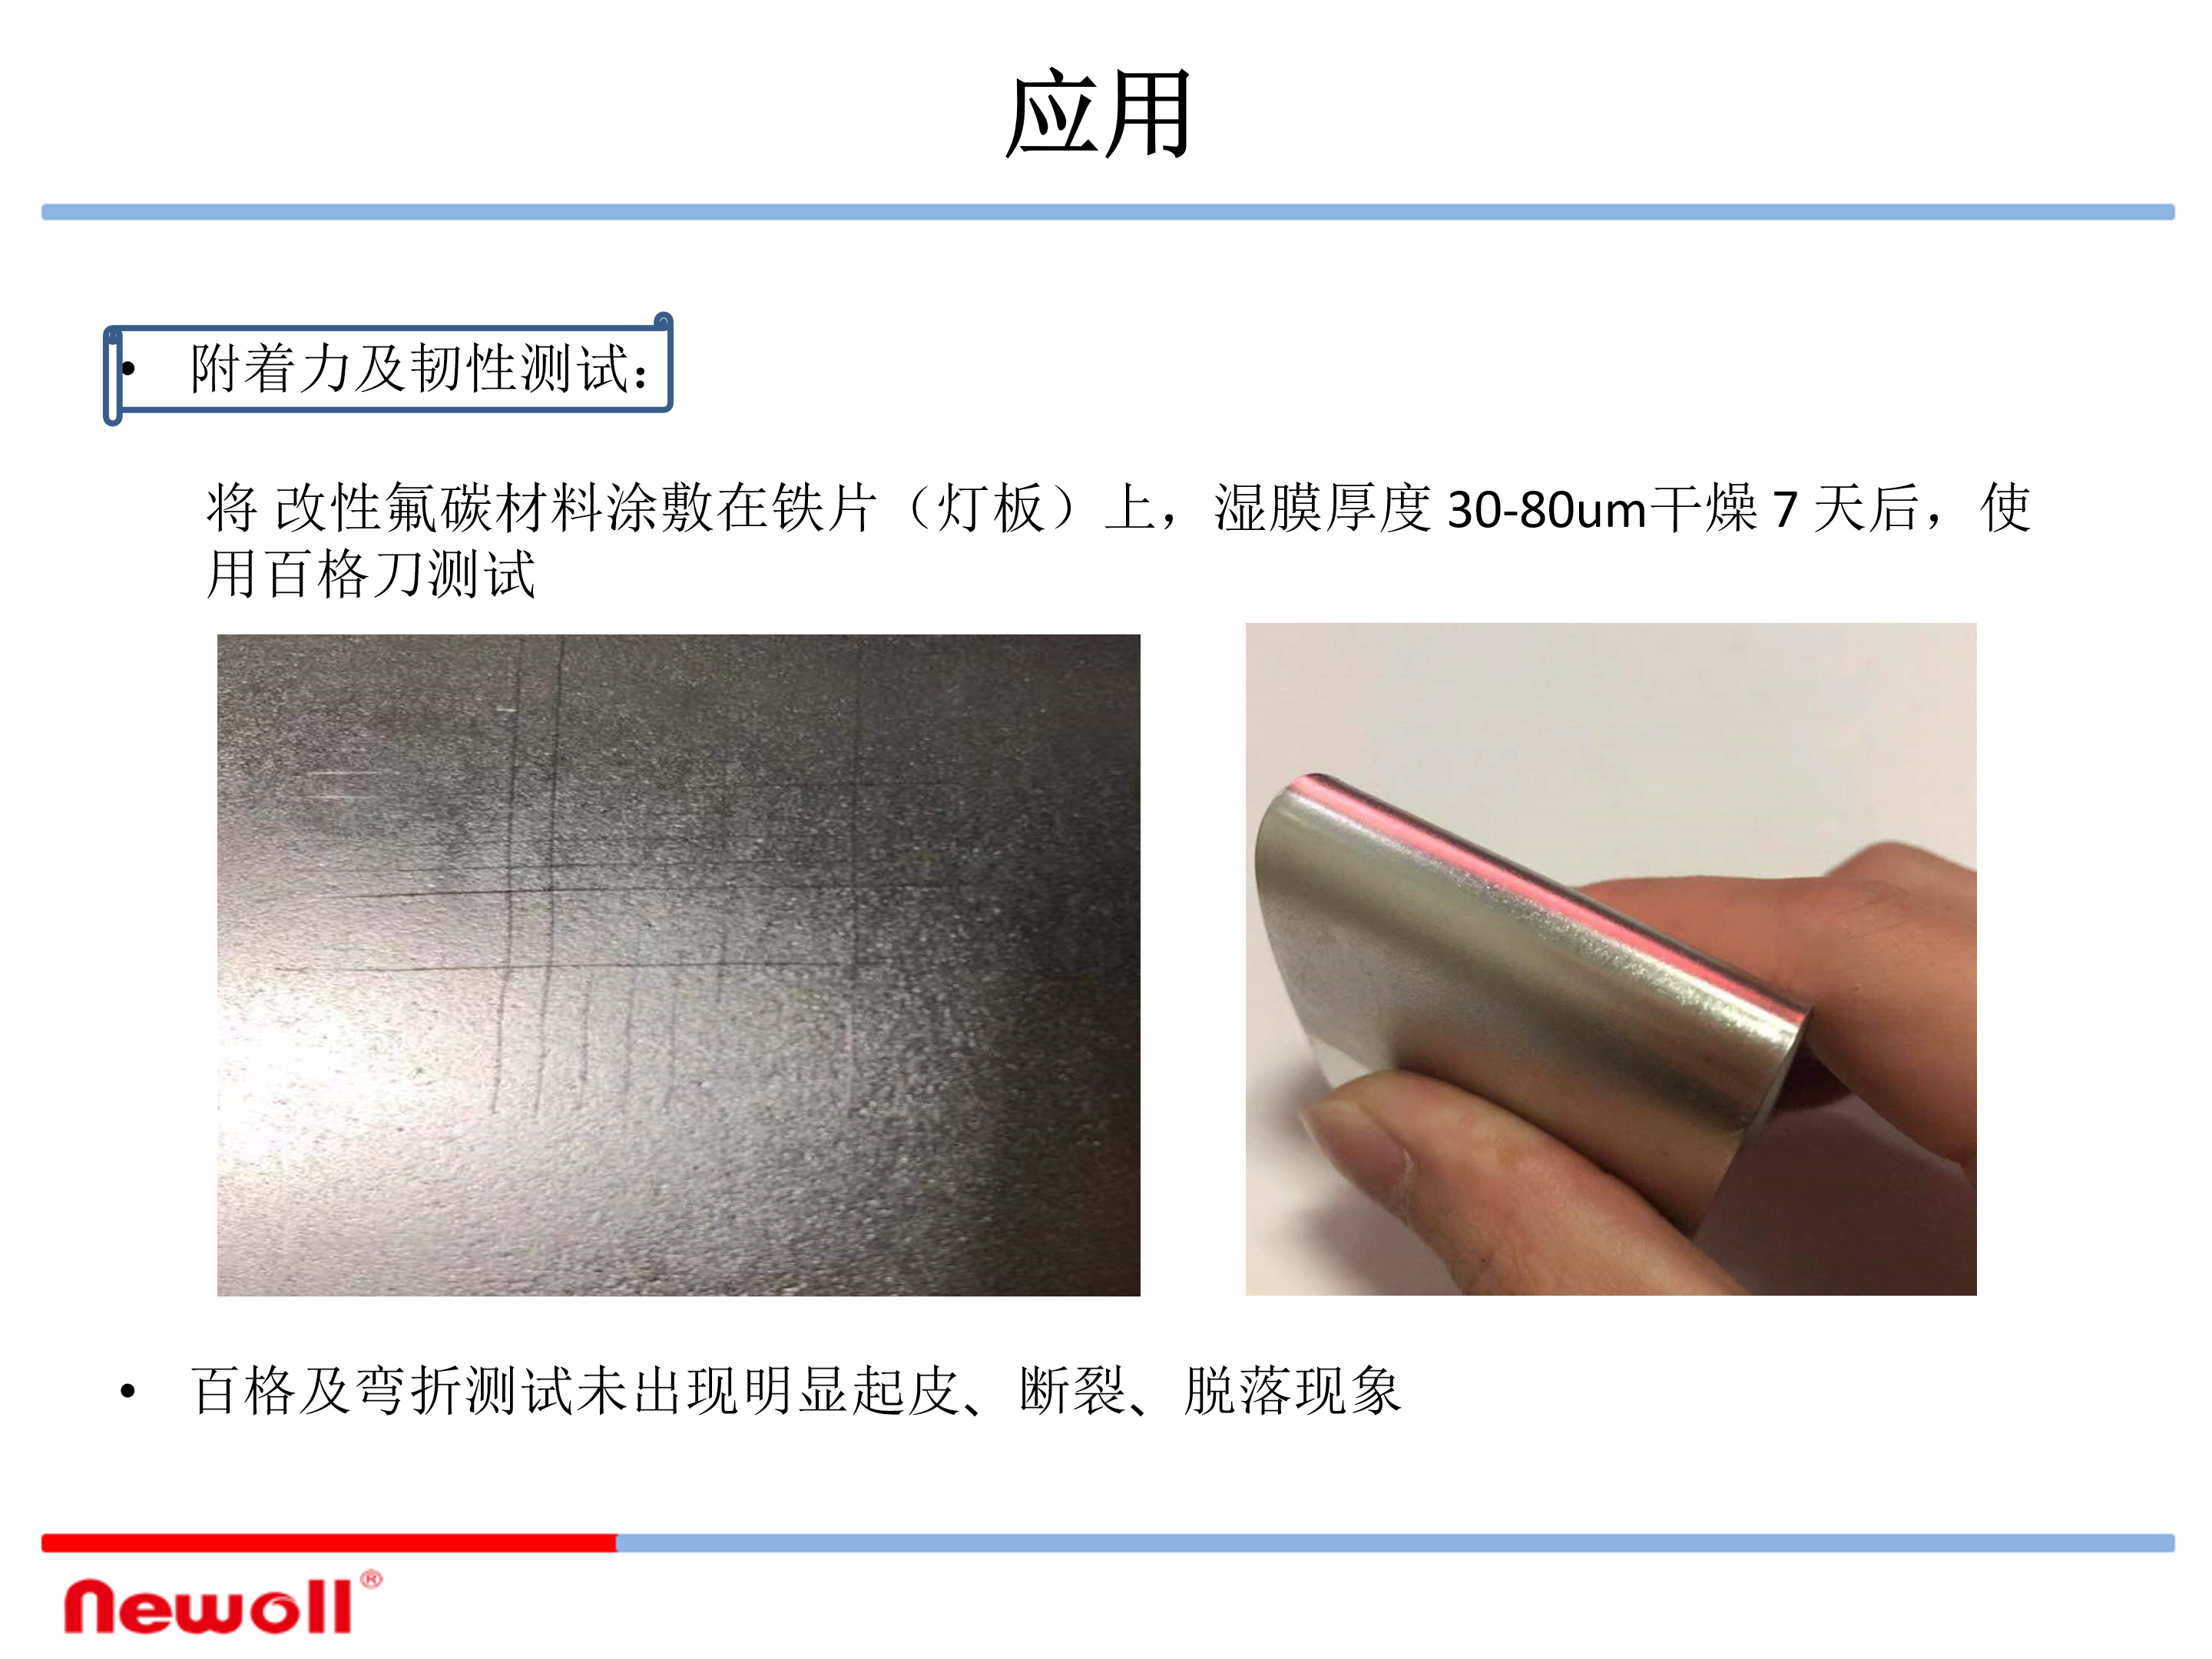 氟碳成膜镀膜材料LED显示应用方案_14